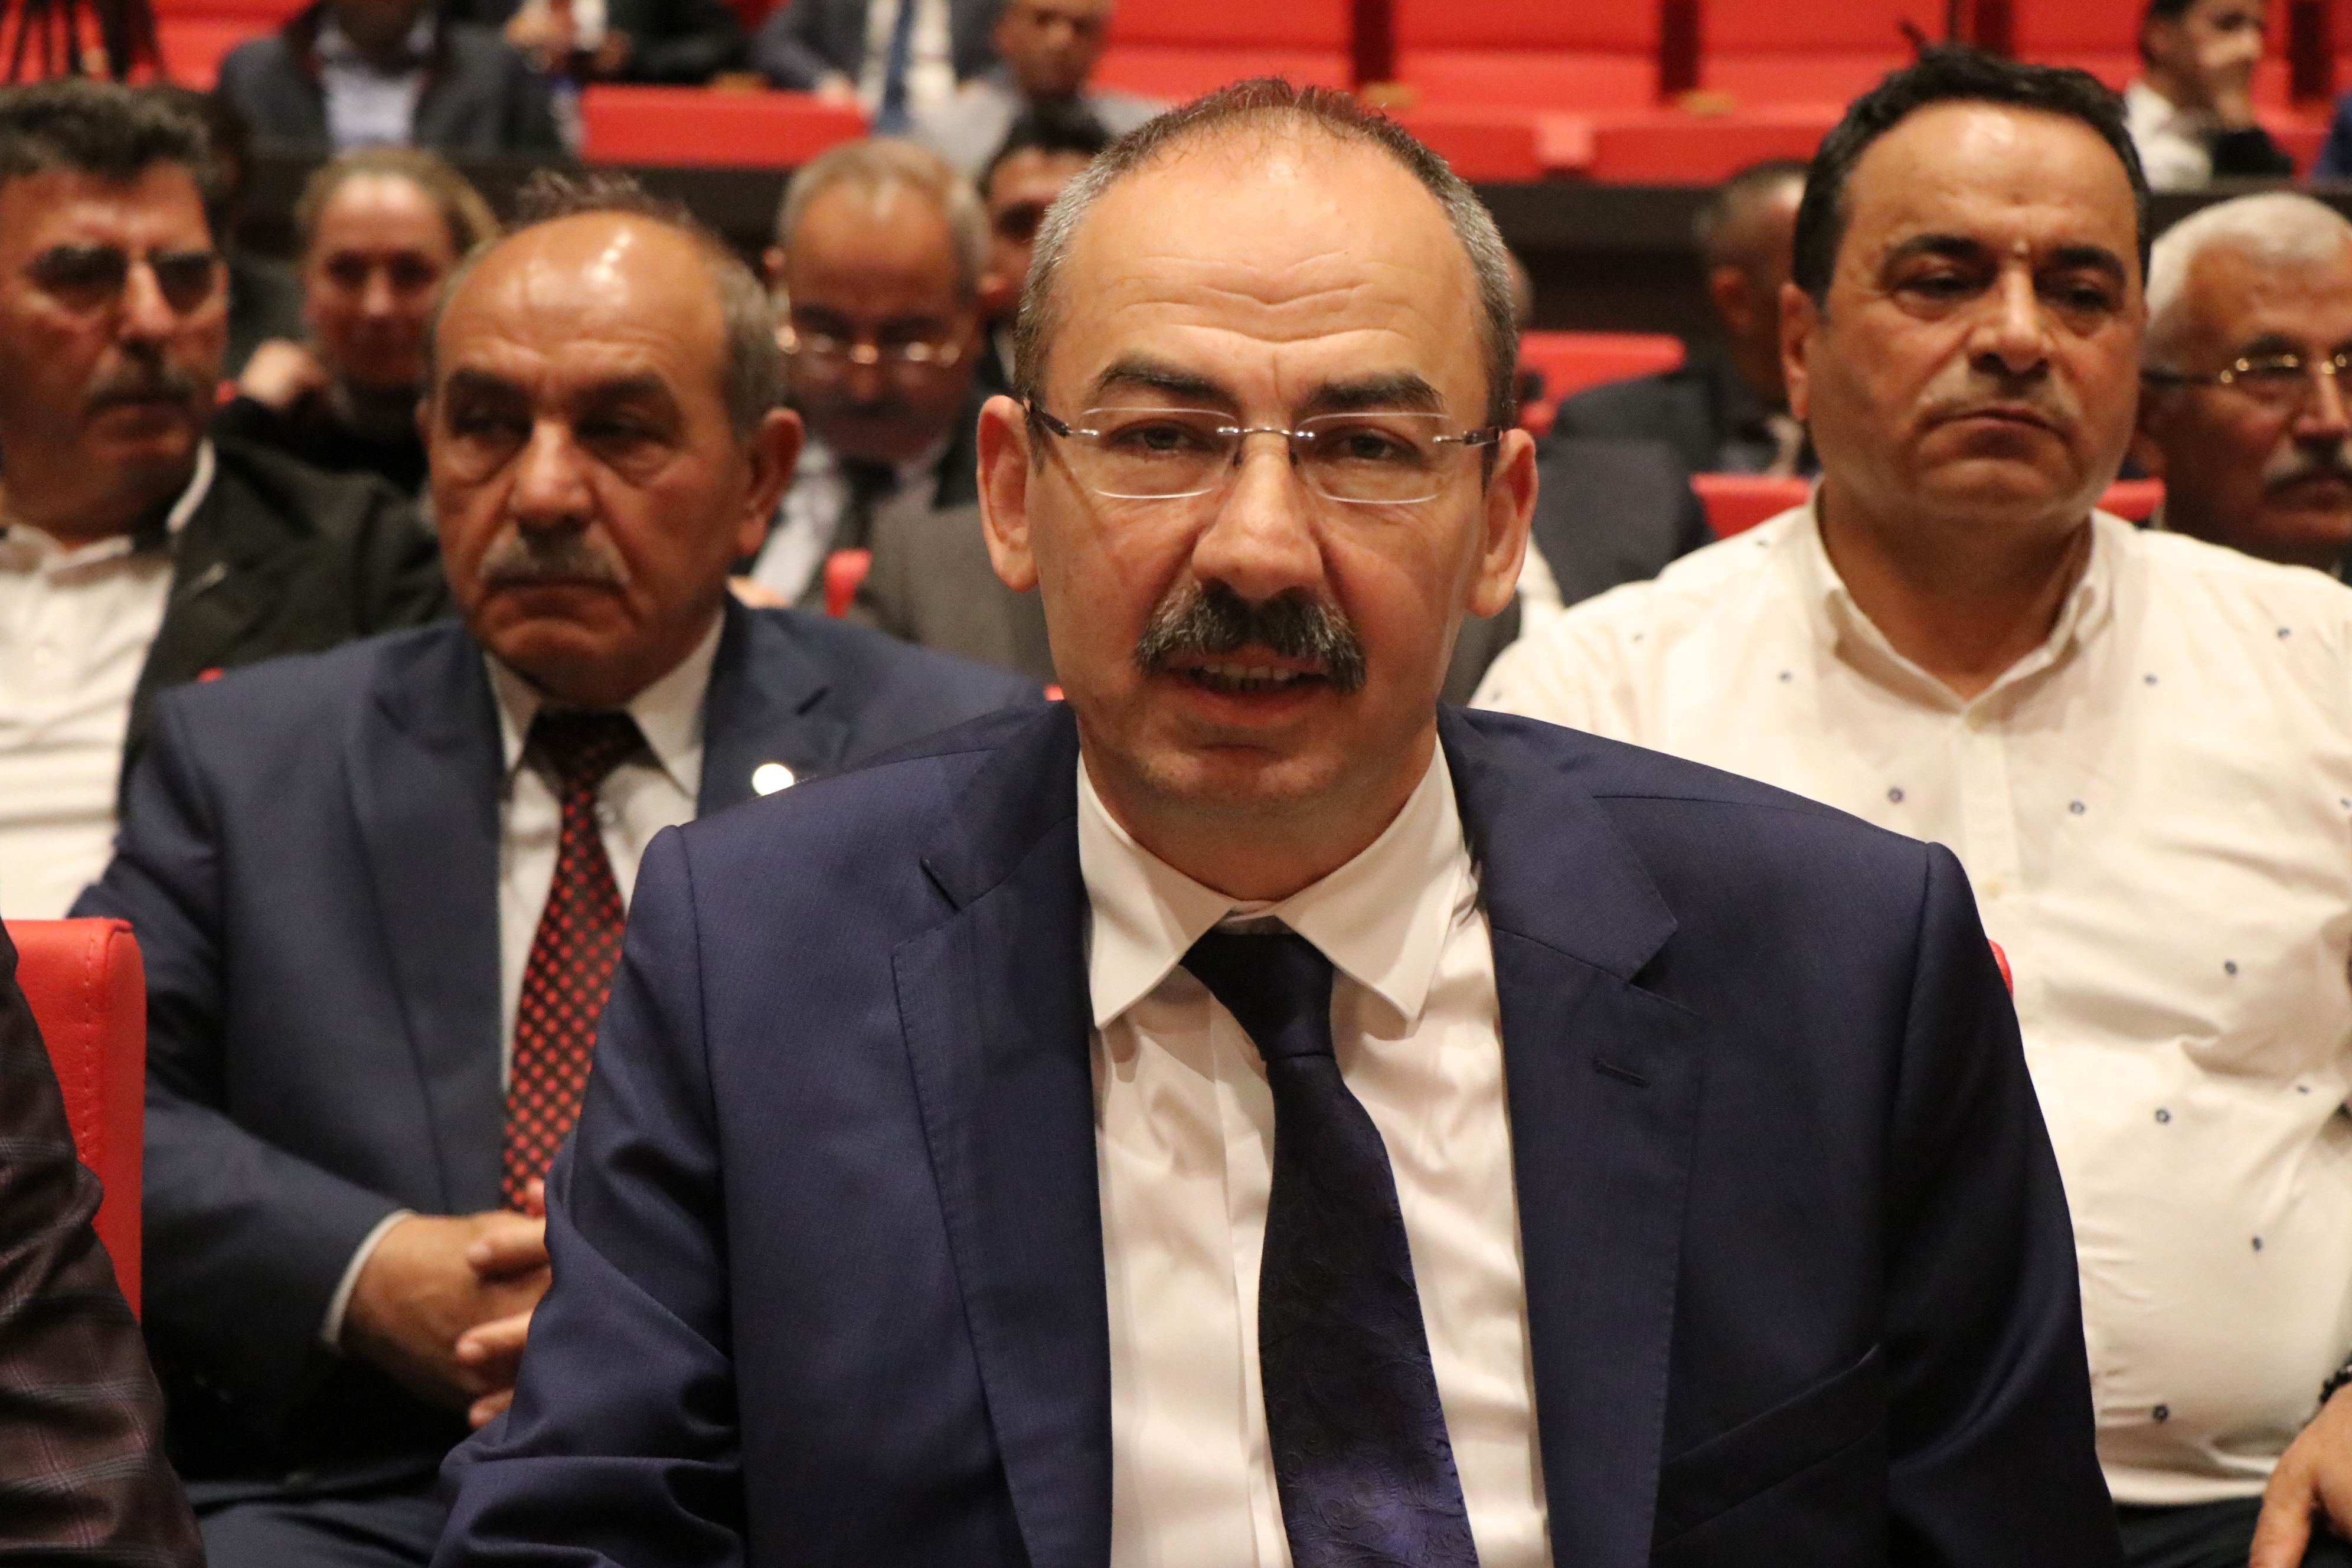 KTO Başkanı Ömer Gülsoy: “24 Haziran’daki seçimle iş dünyasının önü açılacaktır”